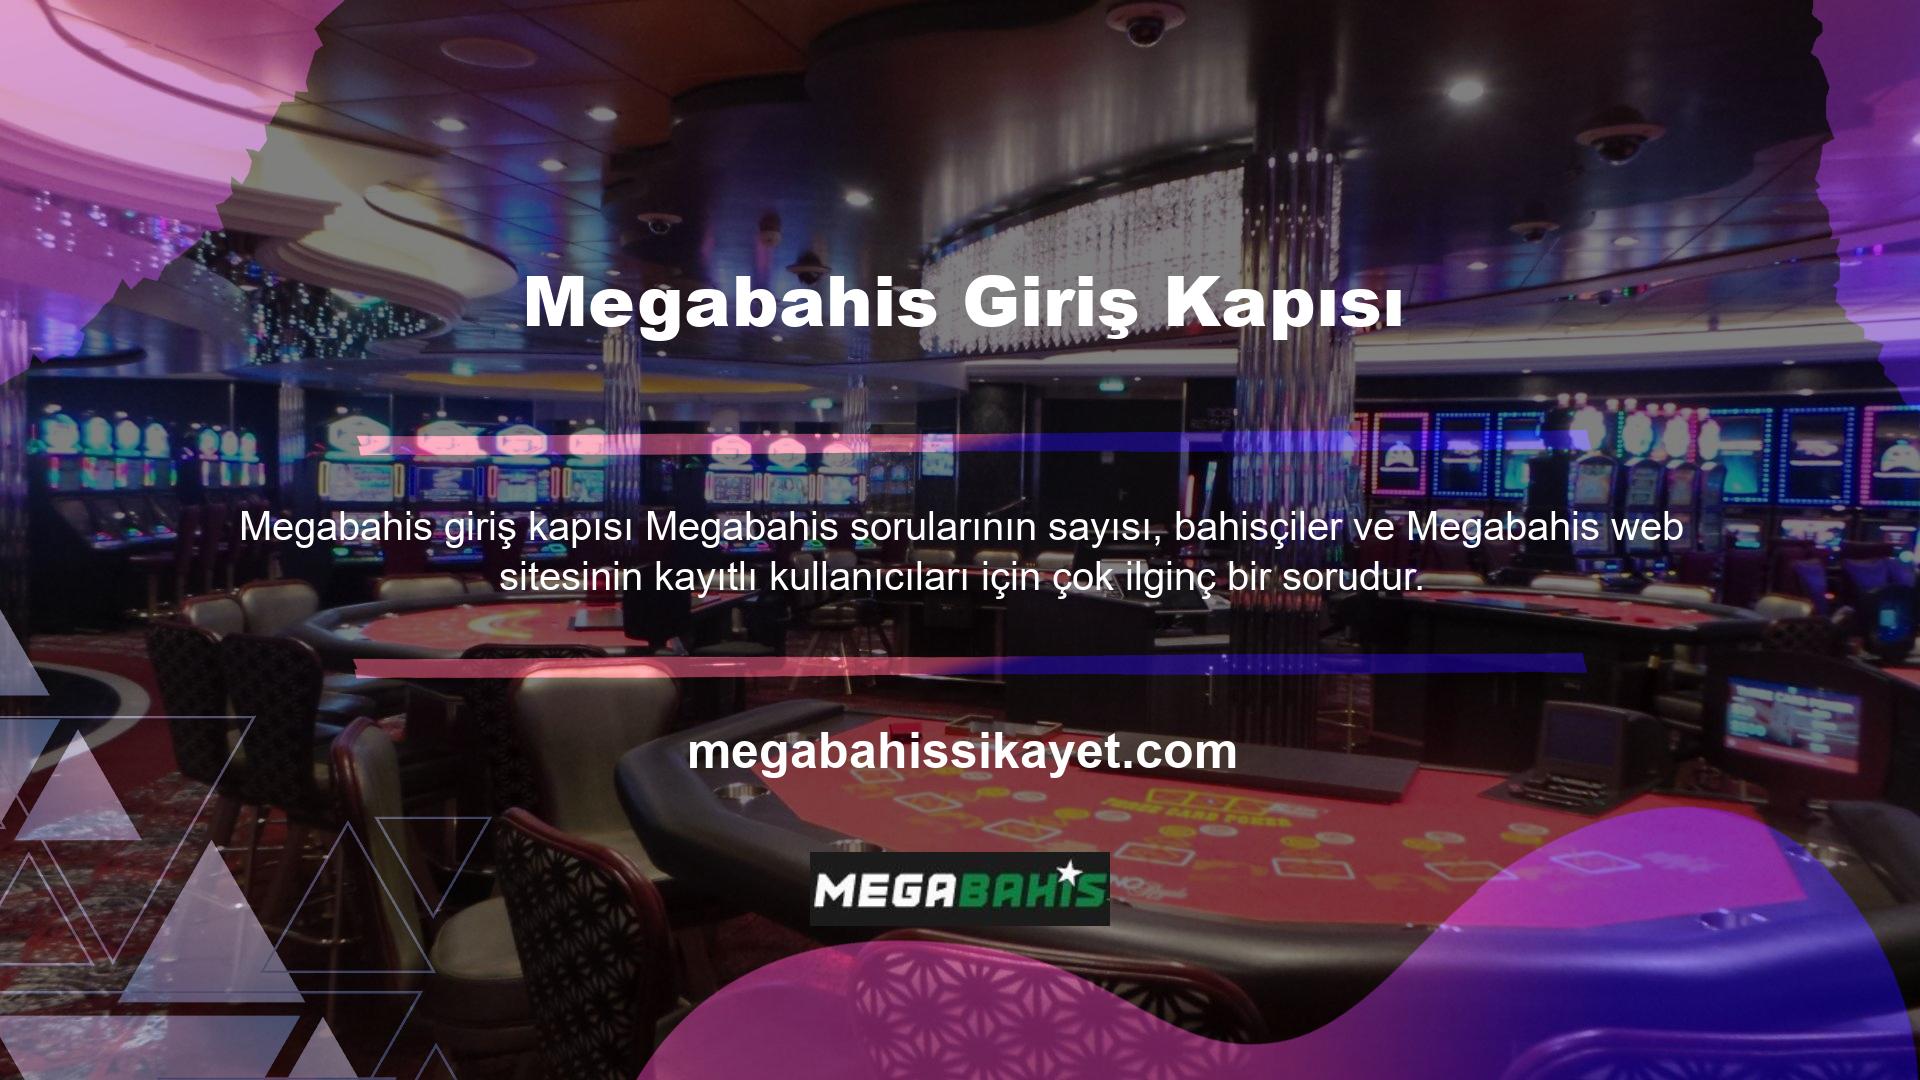 Tüm çevrimiçi casino siteleri gibi Megabahis de ülkedeki faaliyeti sırasında erişimi kapatmak ve kısıtlamak zorunda kaldı